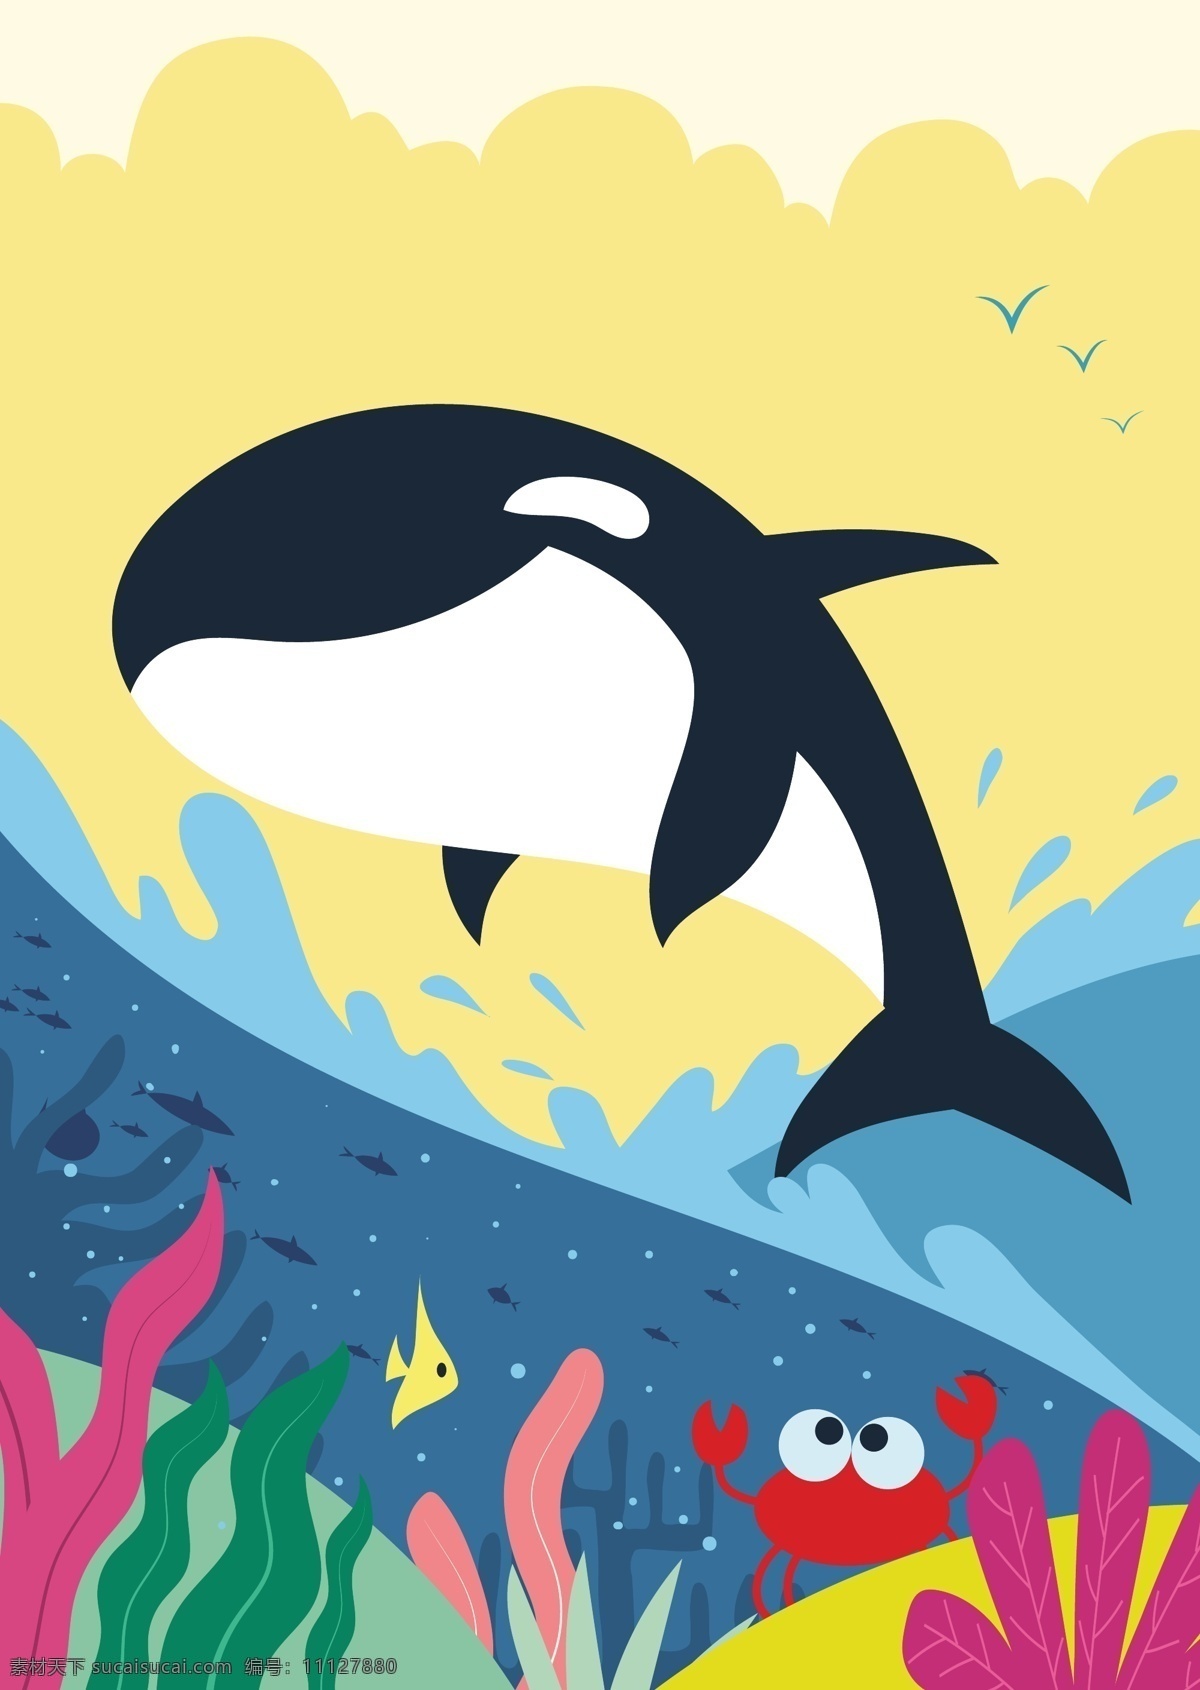 卡通鲸鱼 鲸鱼 大鱼 蓝鲸 飞鲸 鱼类 生活 海洋生物 鲸 卡通动物 生物世界